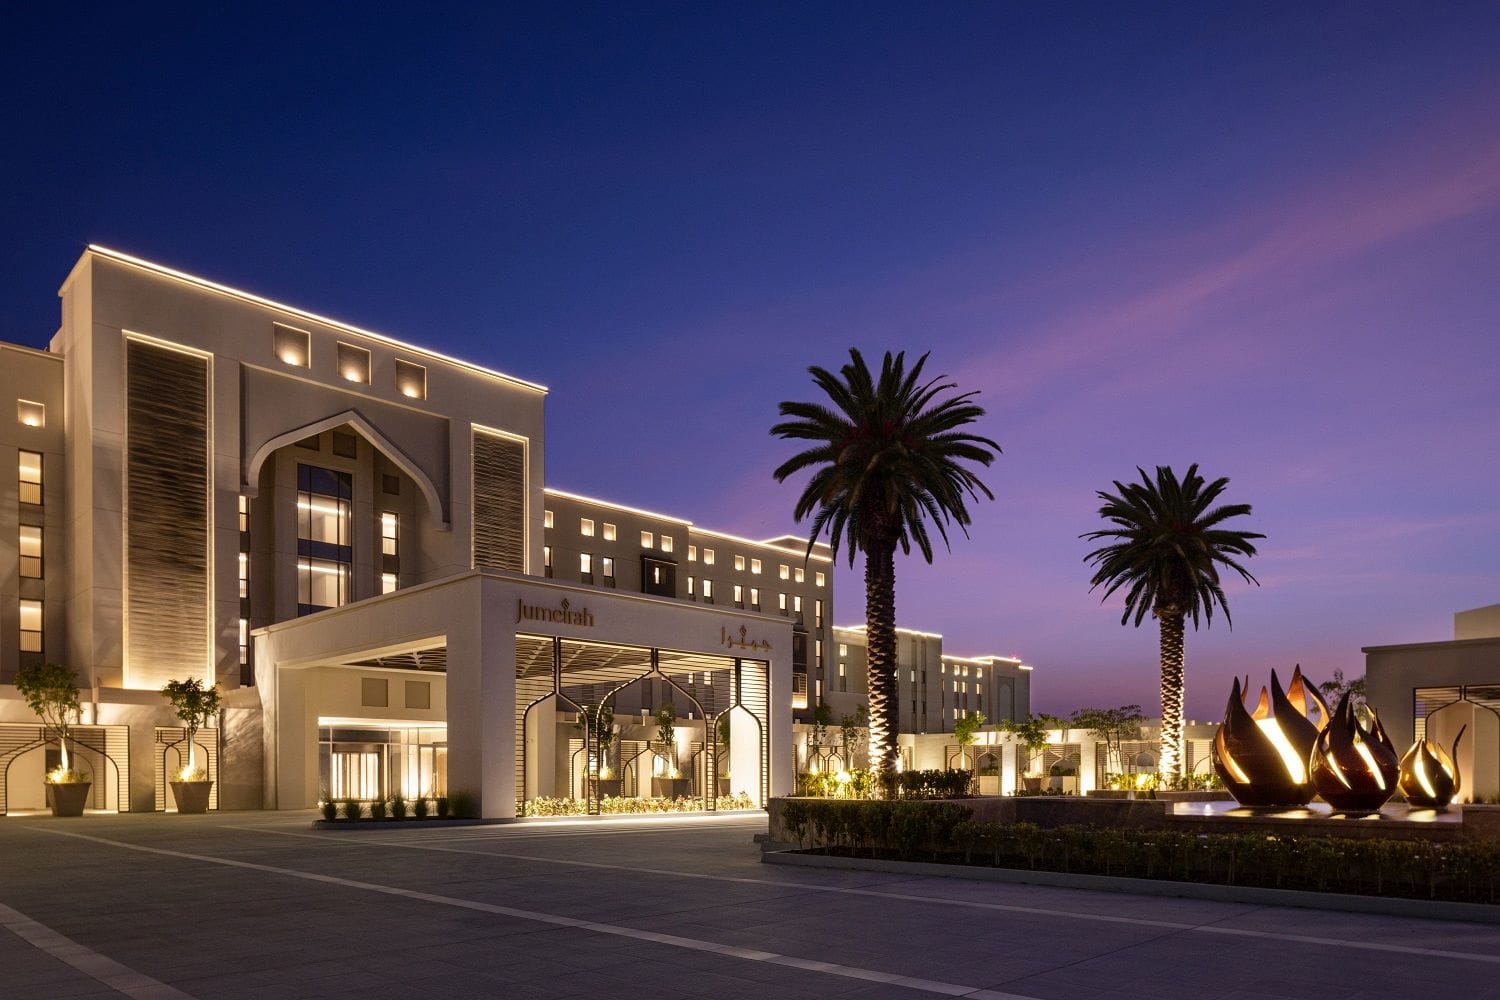 Jumeirah Gulf of Bahrain Resort Fassade Eingang